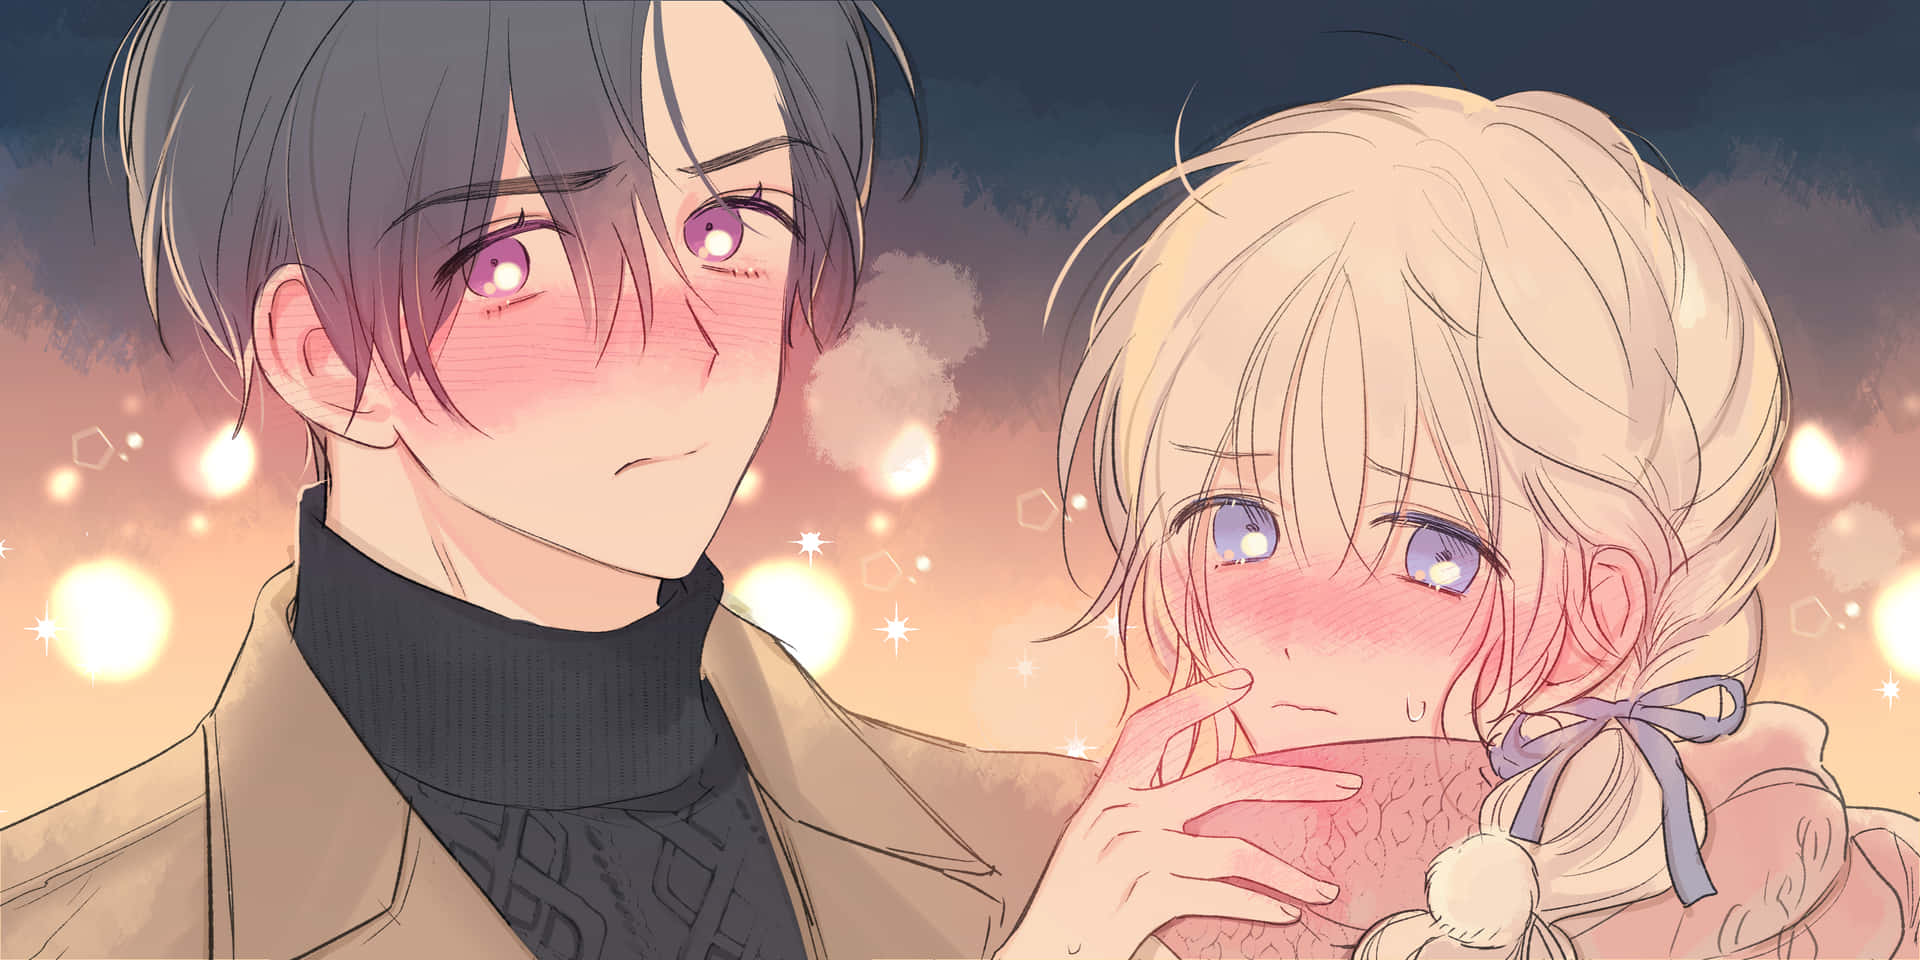 Blushing Anime Couple